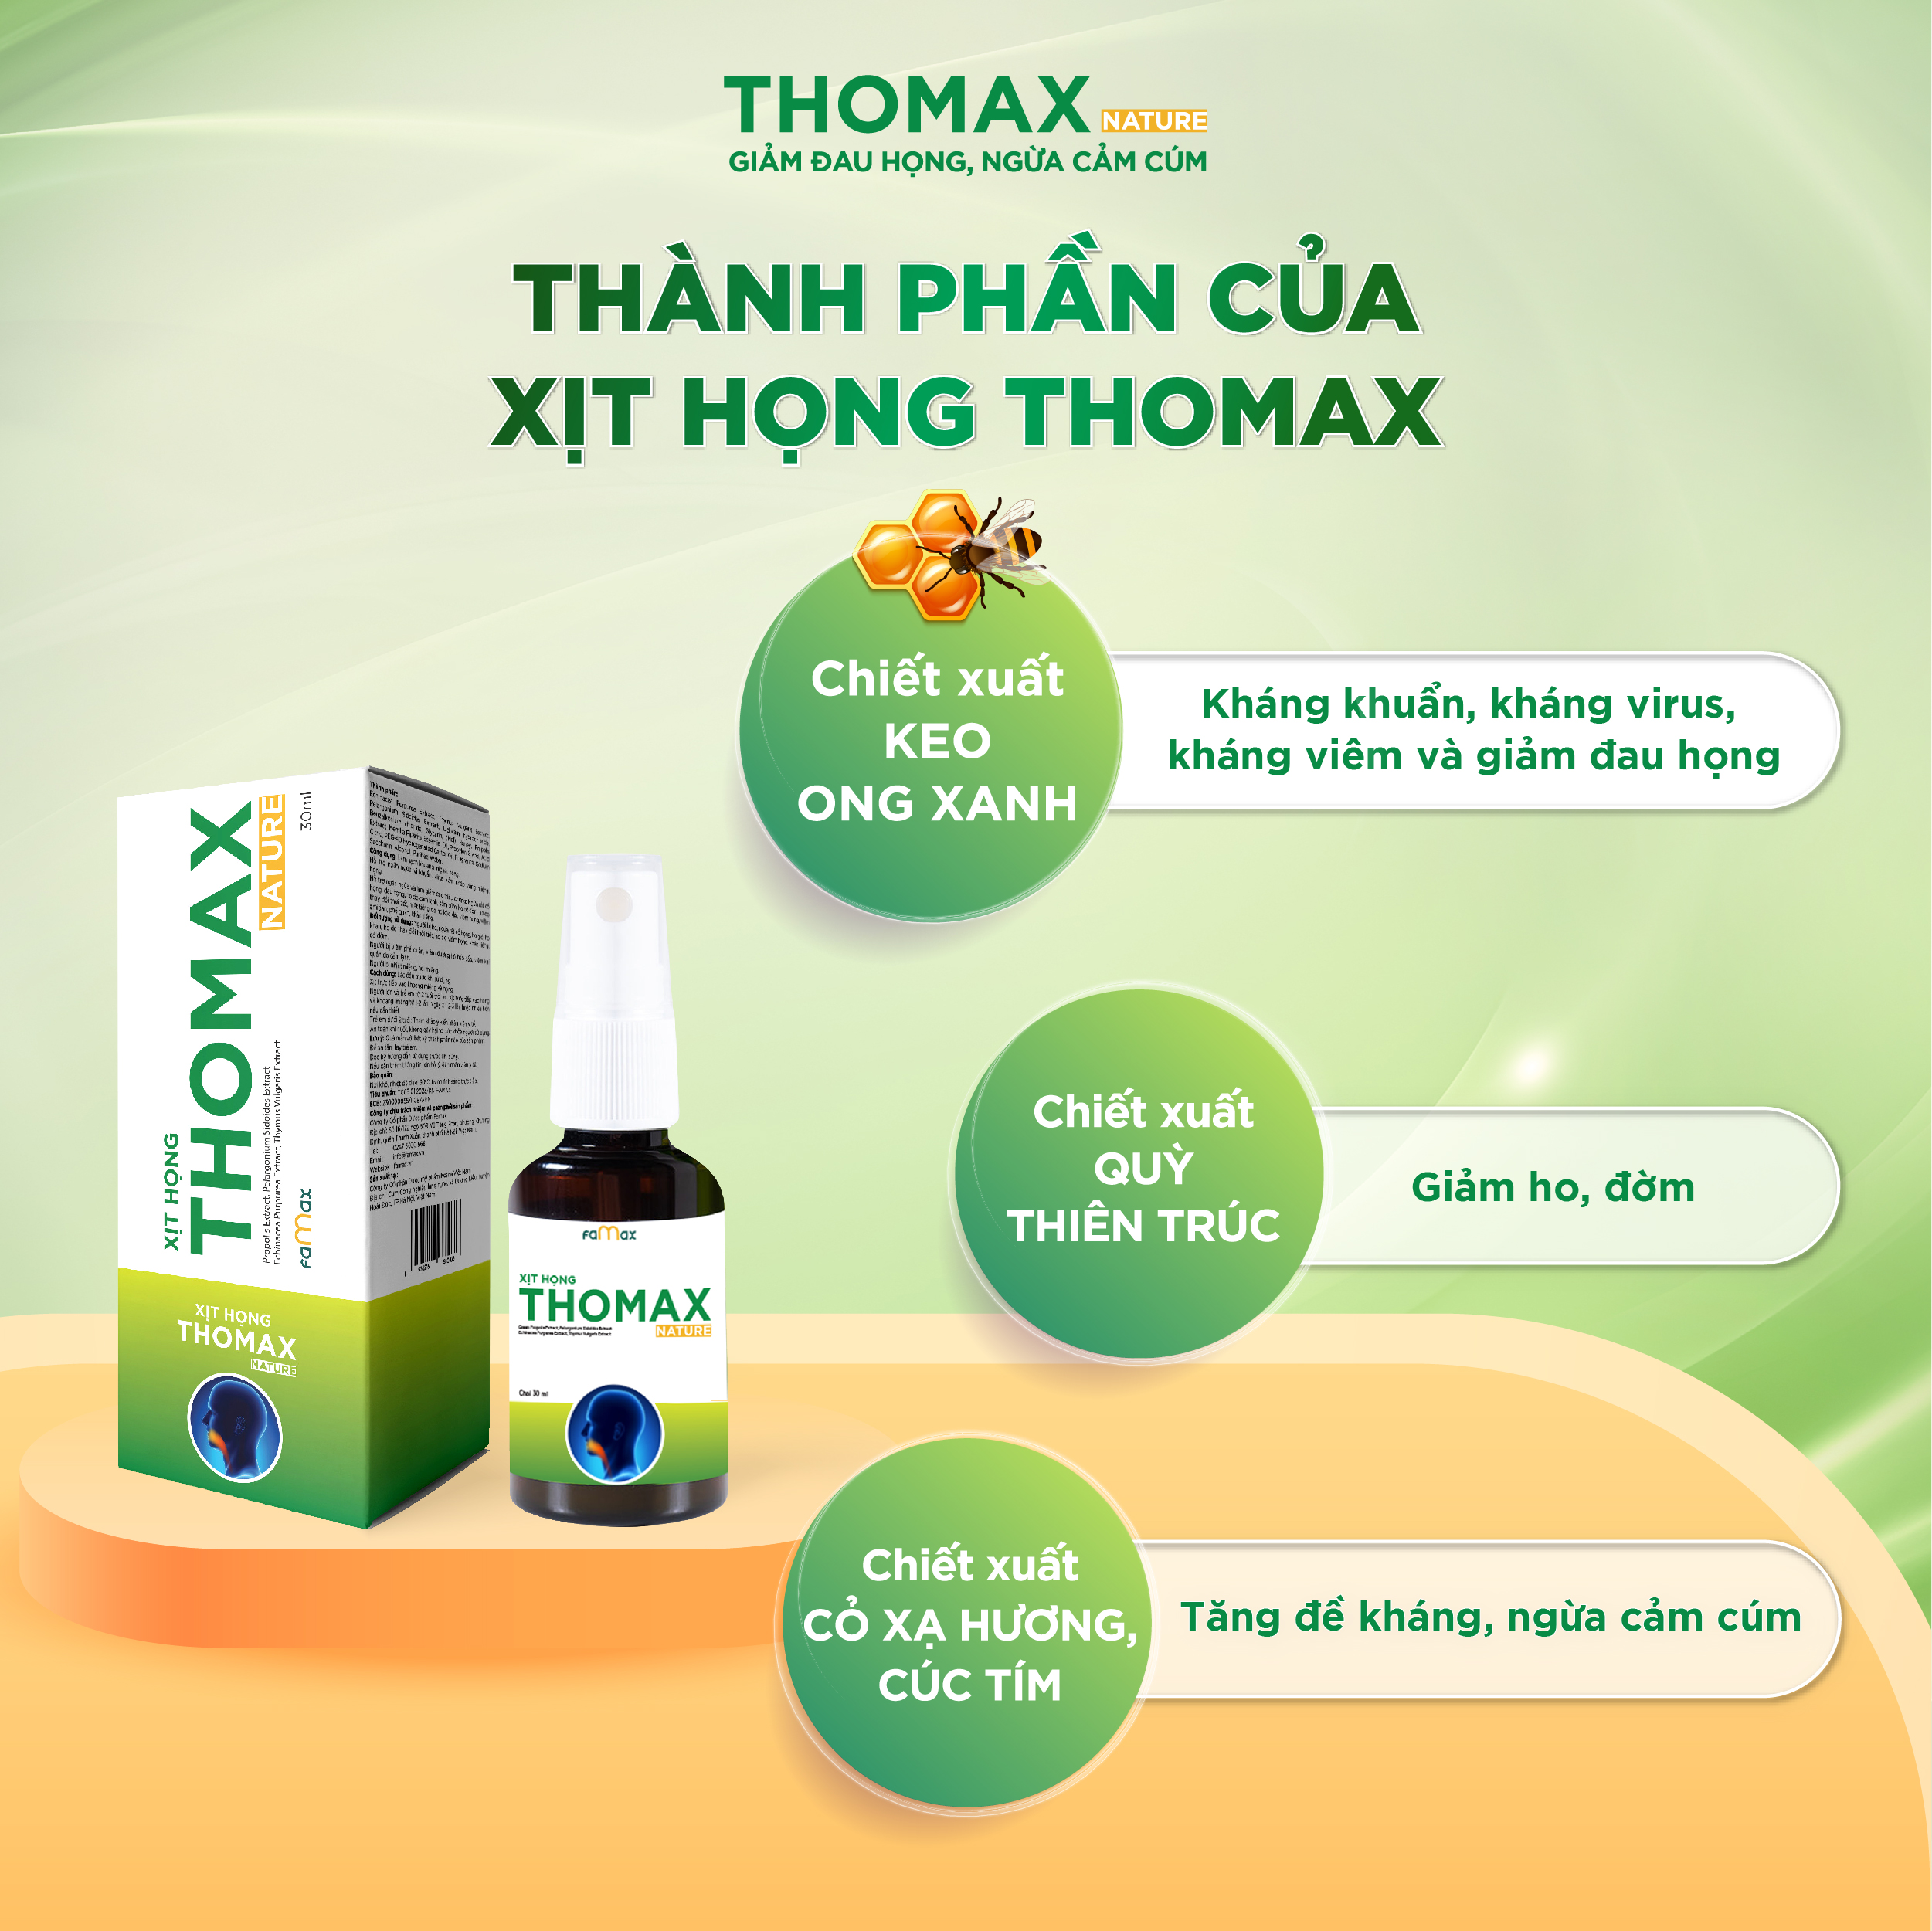 Thomax là sản phẩm an toàn, lành tính khi sử dụng lâu dài